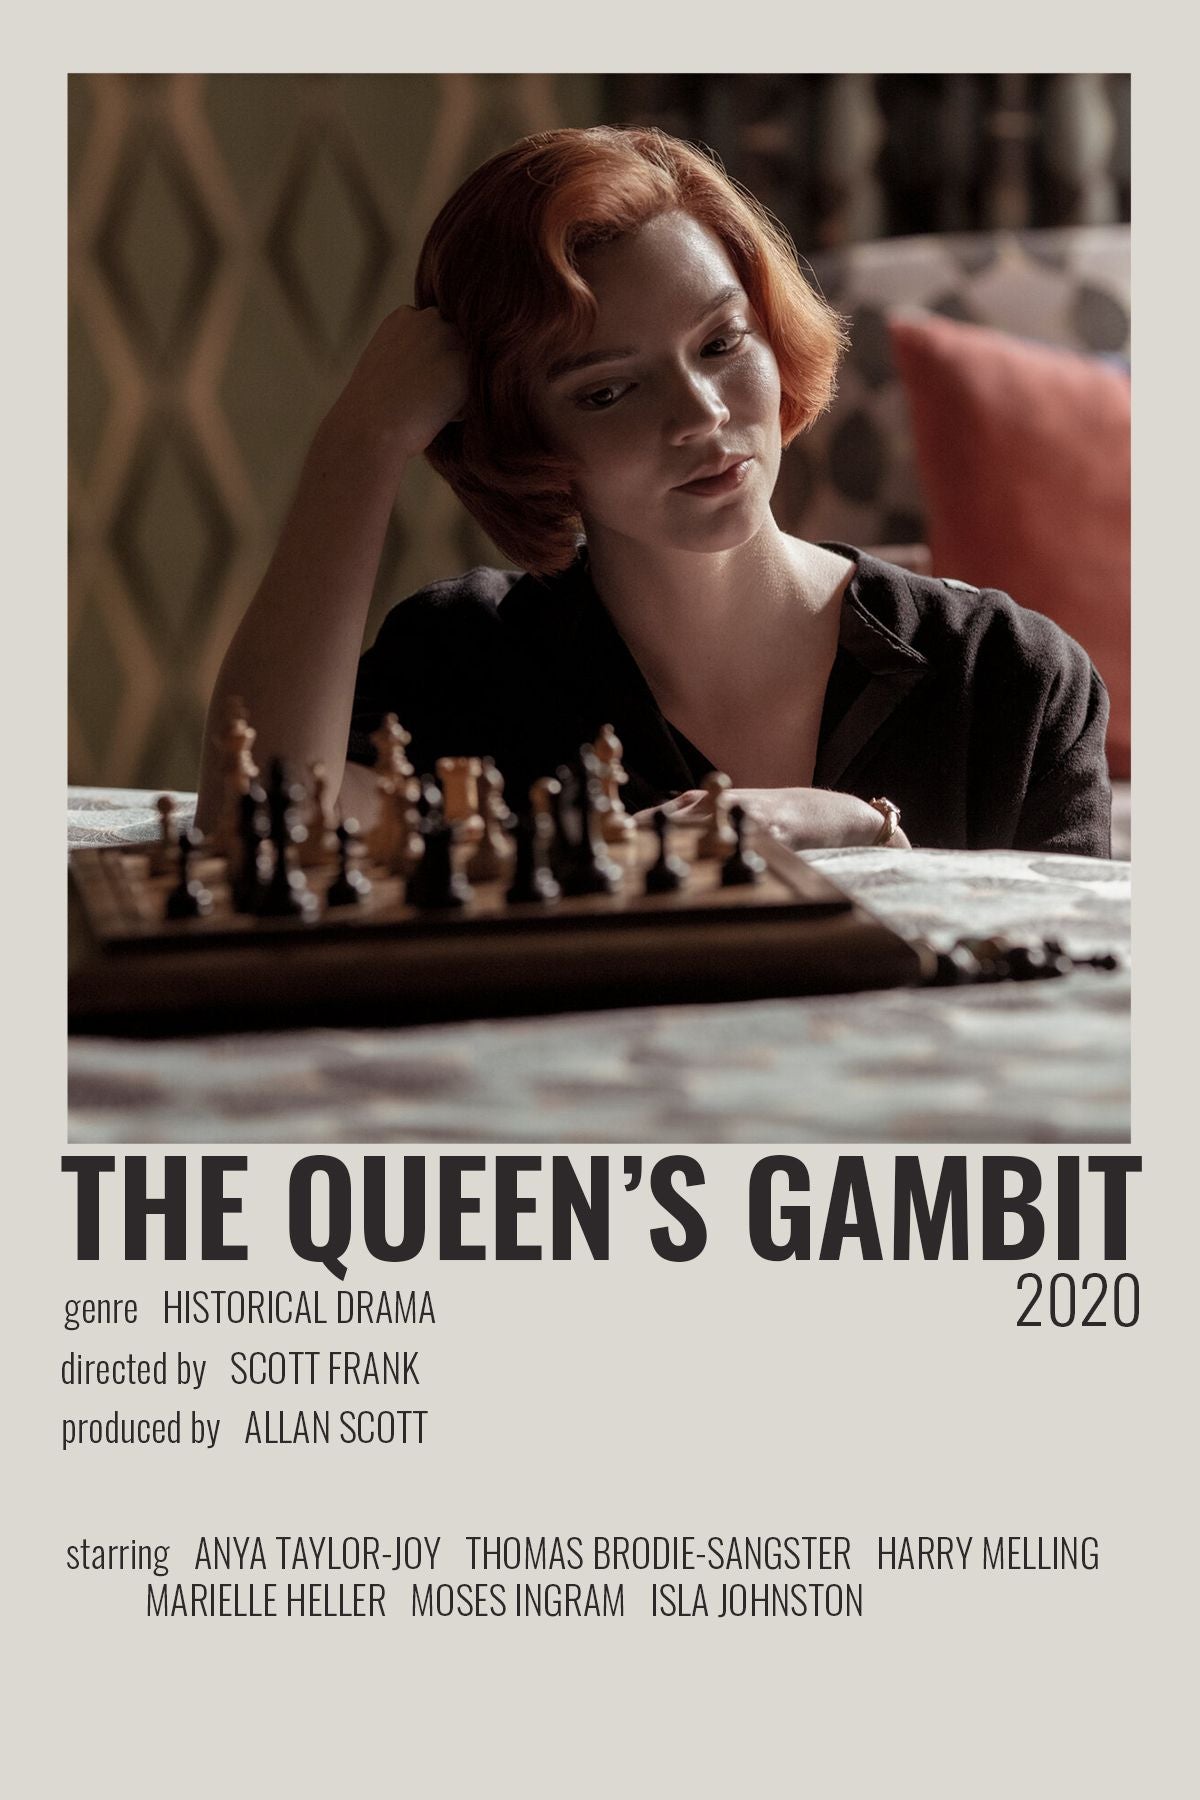 Trends International Netflix The Queen's Gambit - Key Art Framed